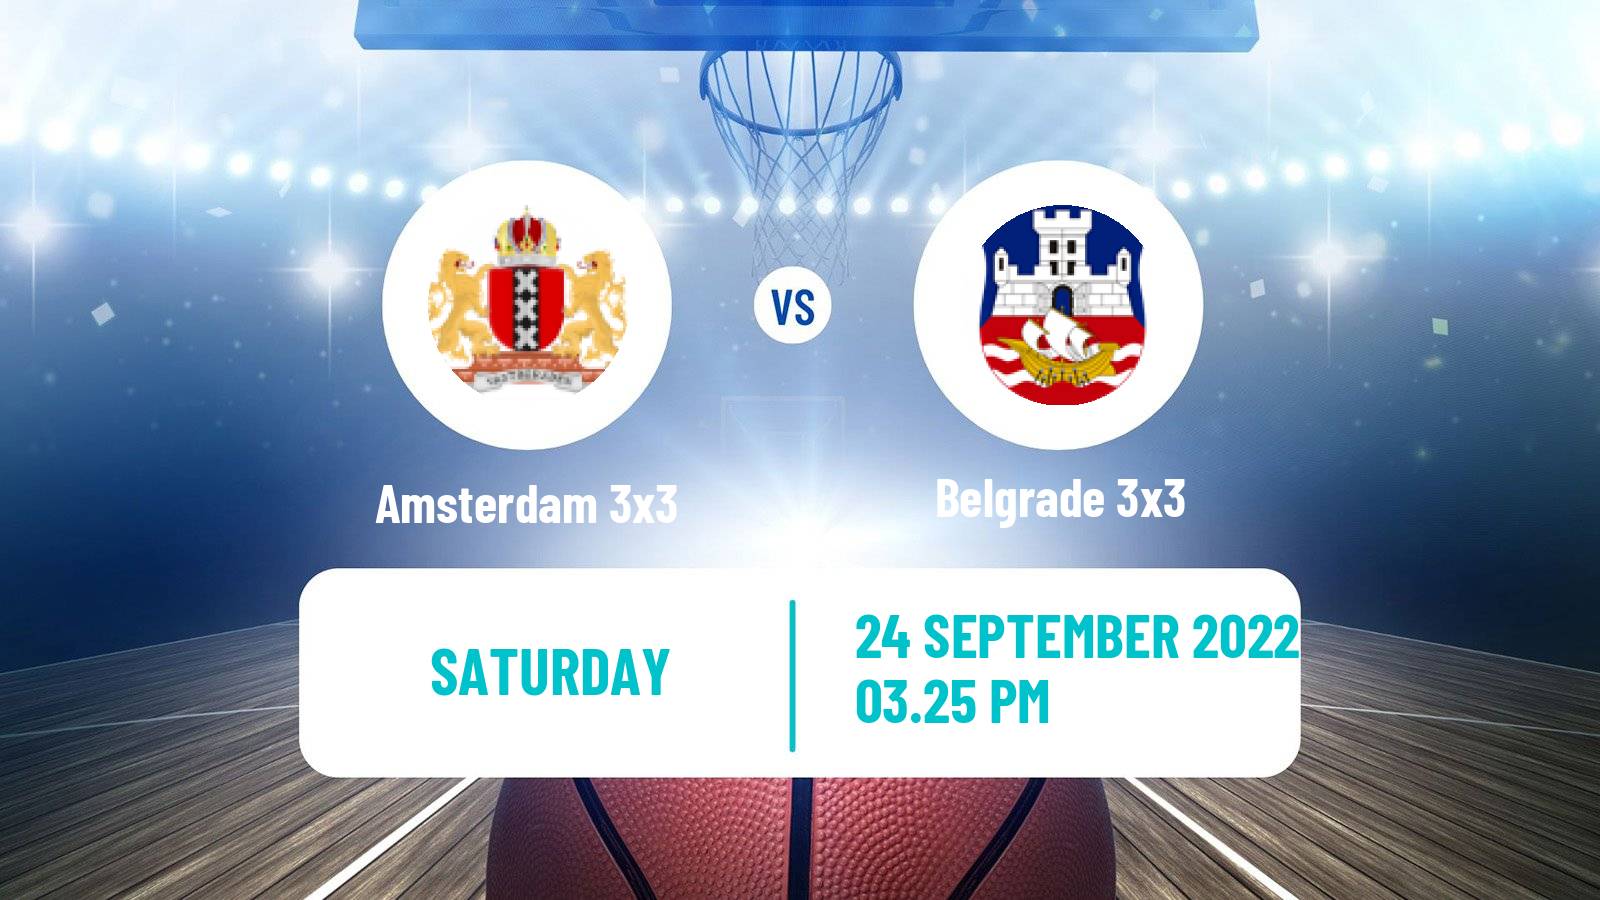 Basketball World Tour Utrecht 3x3 Amsterdam 3x3 - Belgrade 3x3